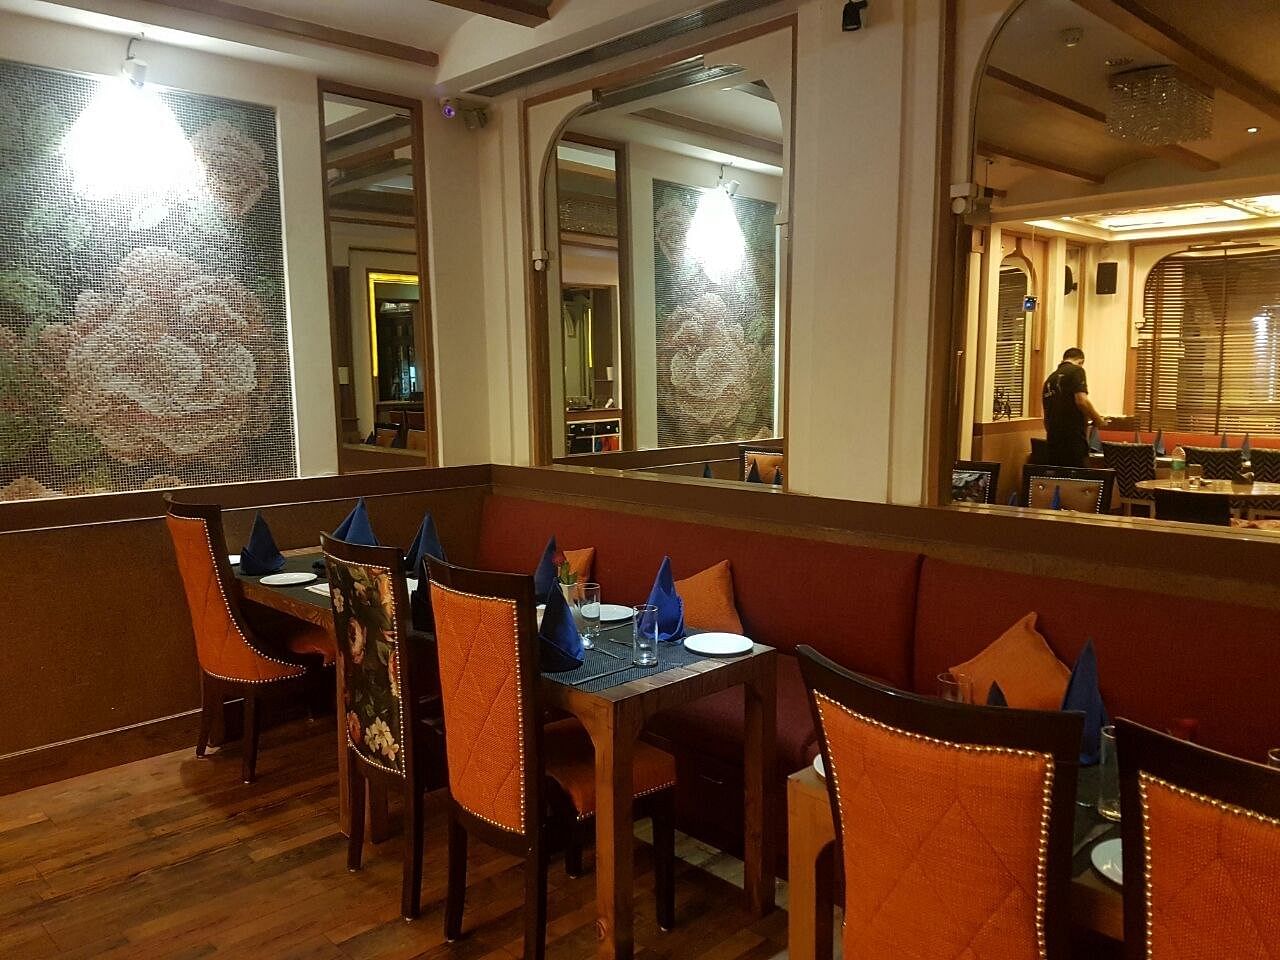 Ardor Restaurant in Connaught Place, Delhi